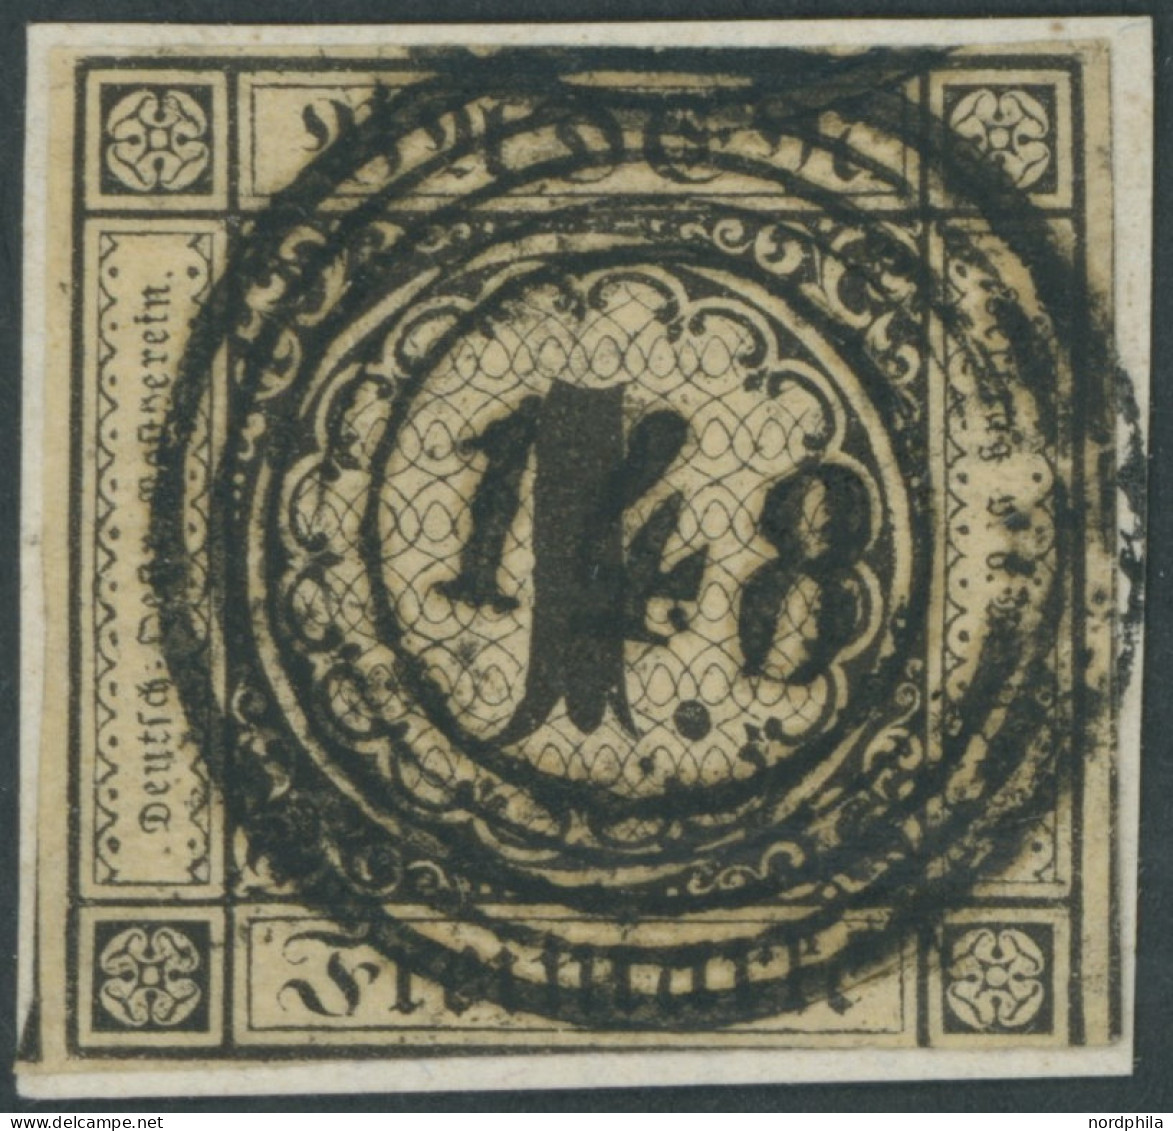 BADEN 1a BrfStk, 1851, 1 Kr. Schwarz Auf Sämisch, Zentrischer Nummernstempel 148, Unten Teils Etwas Angeschnitten Sonst  - Oblitérés